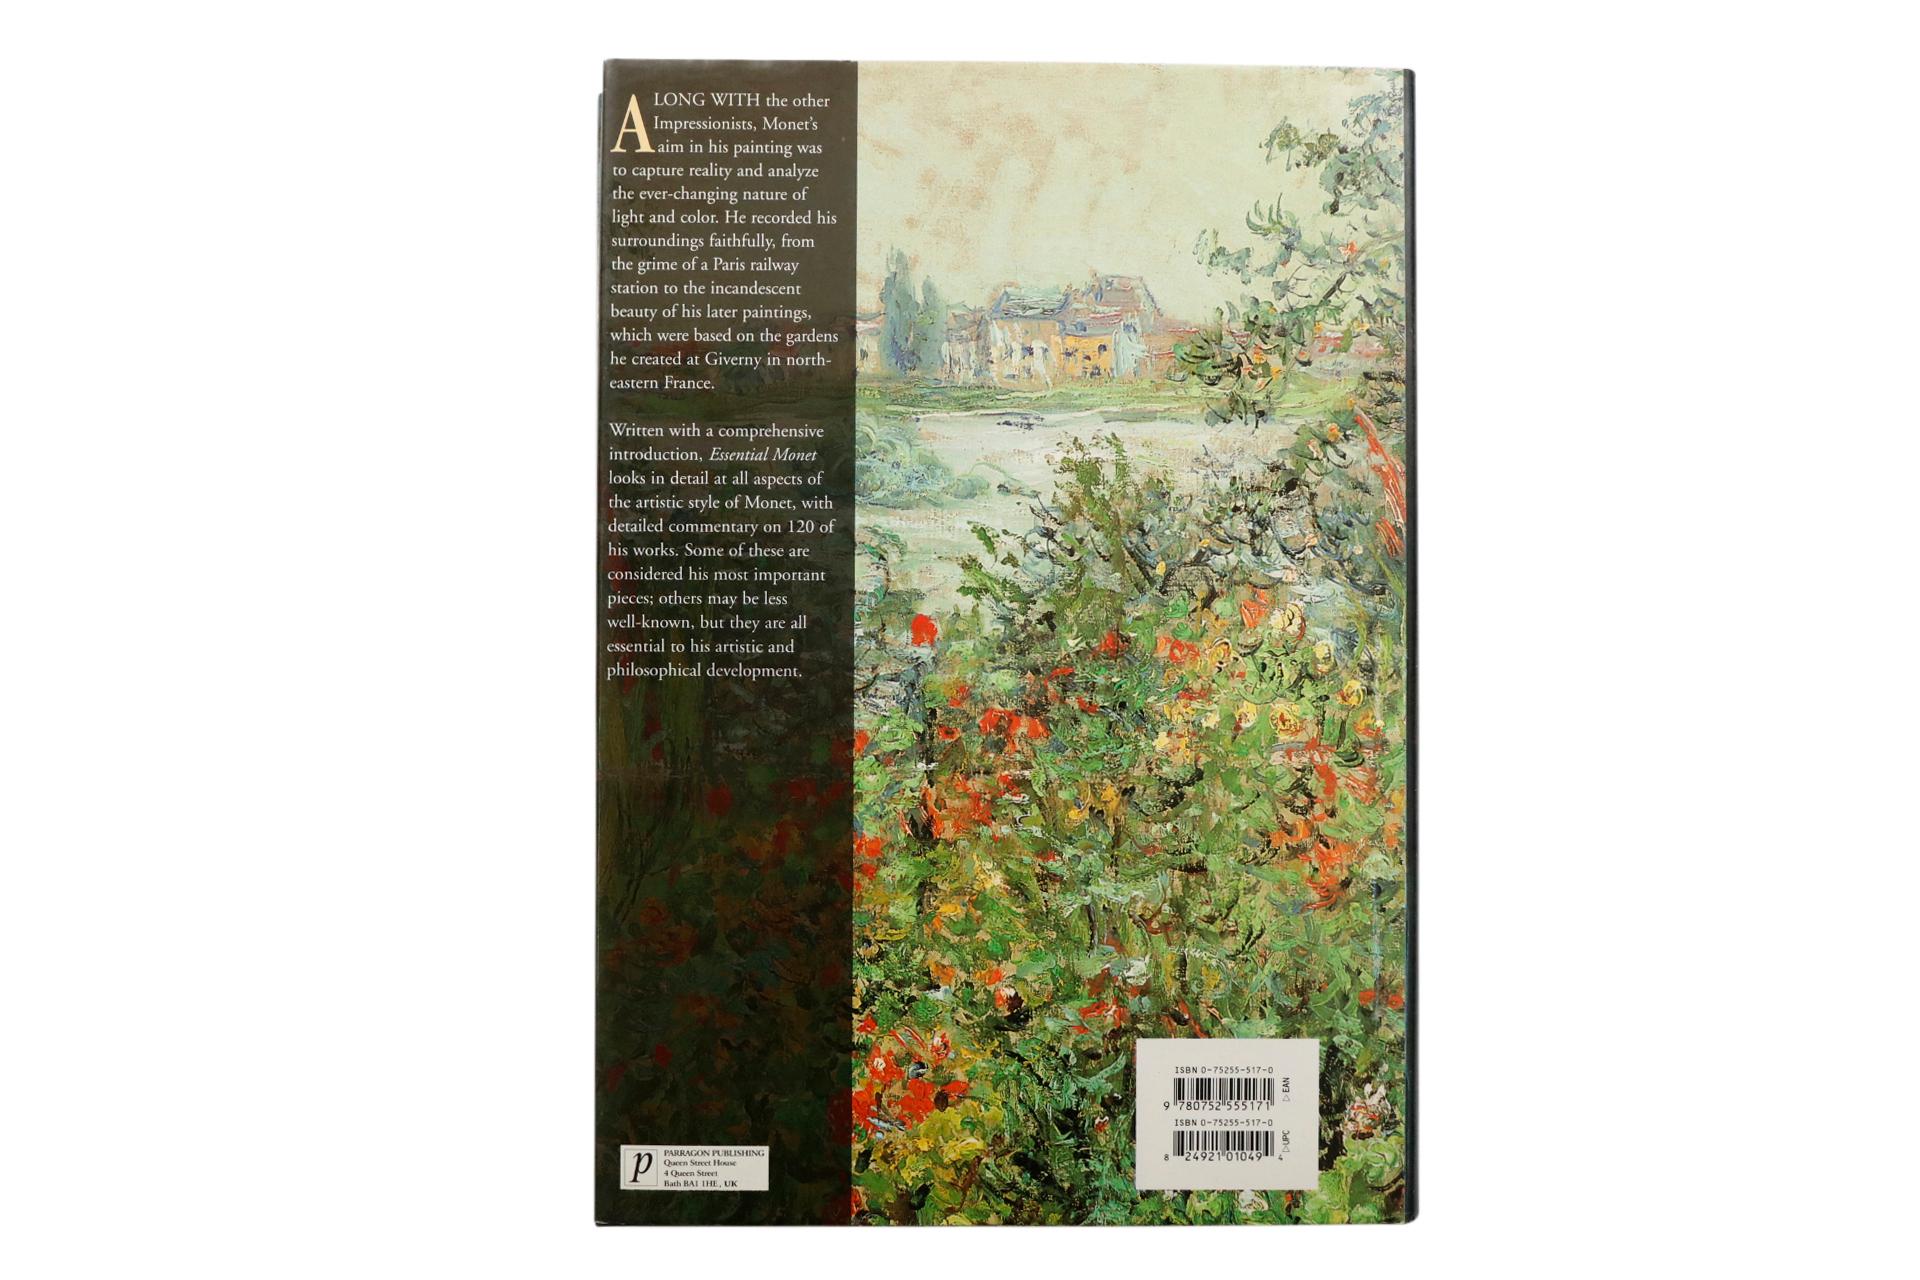 Essential Monet par Vanessa Potts. Livre relié avec jaquette, publié en 2003 par Parragon Publishing de Bath, Angleterre. 256 pages, illustrées.